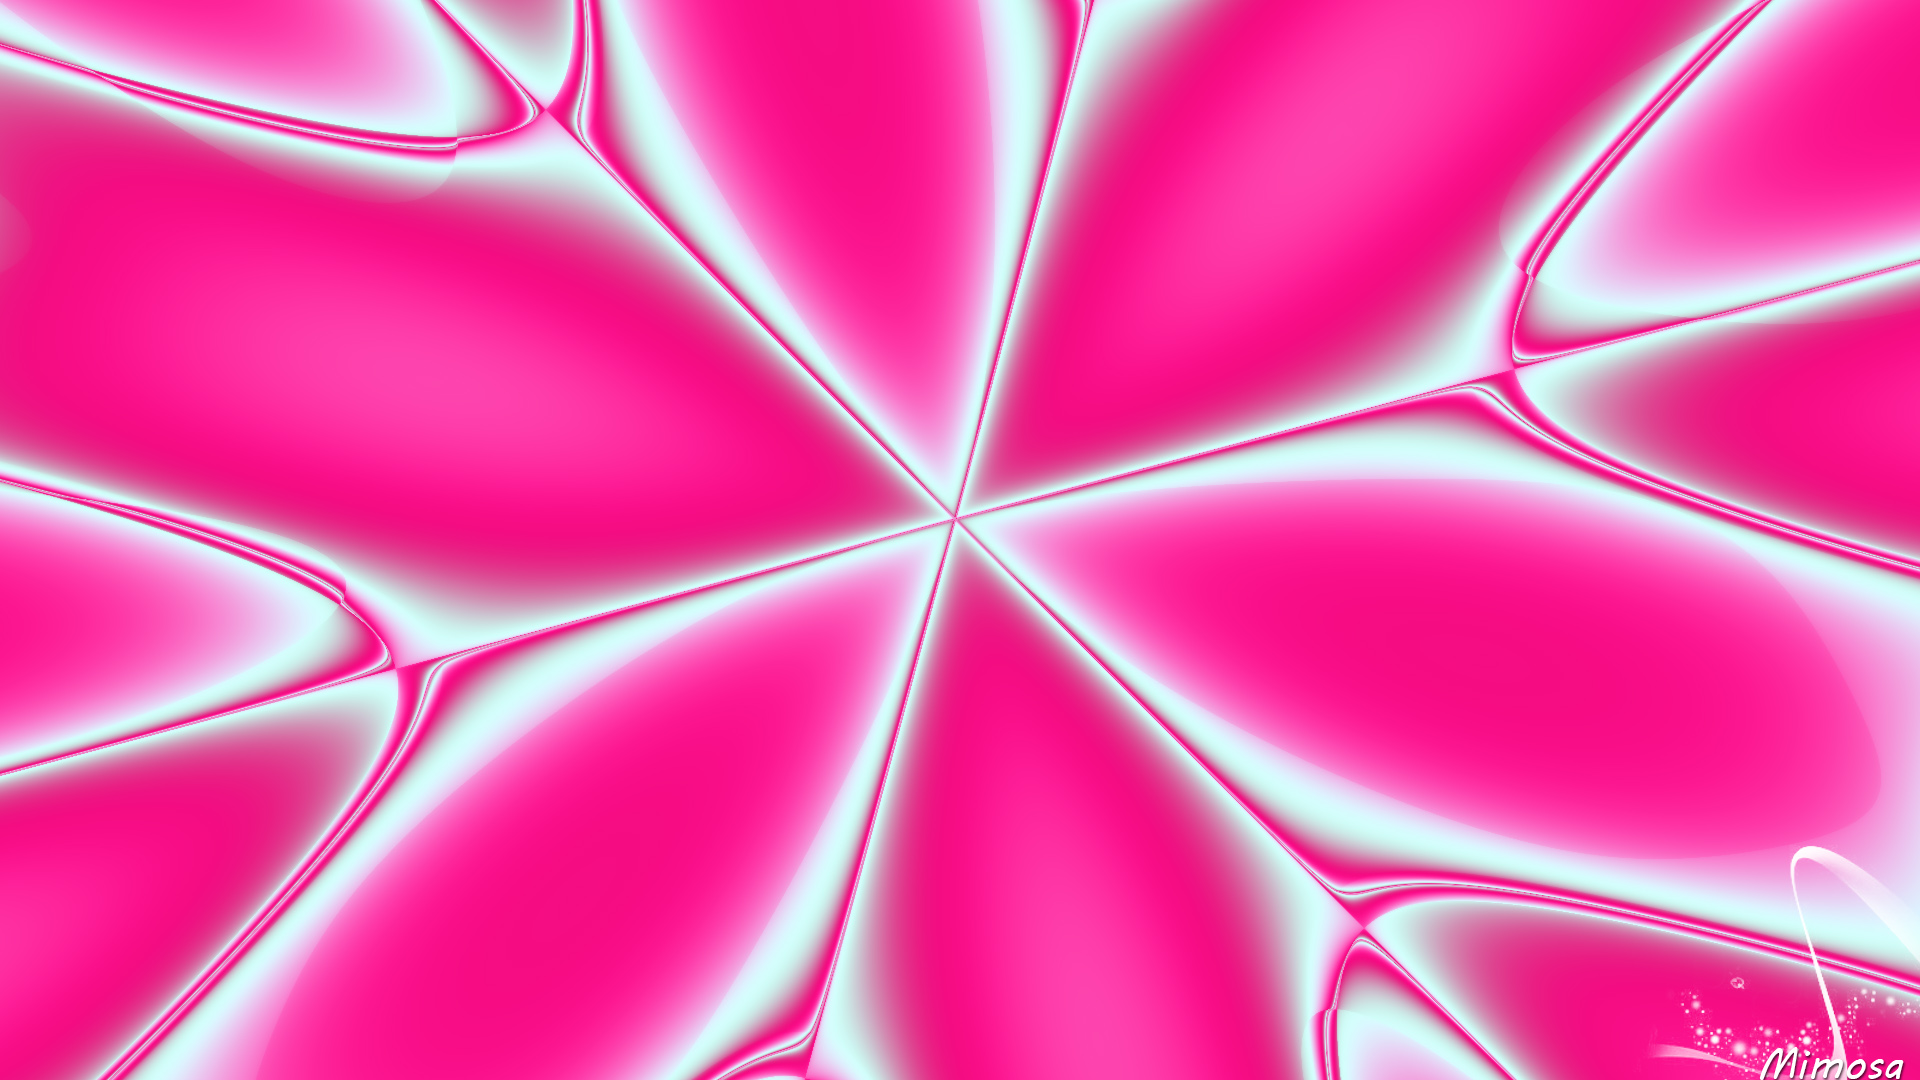 Abstract Artistic Digital Art Kaleidoscope Pink 1920x1080